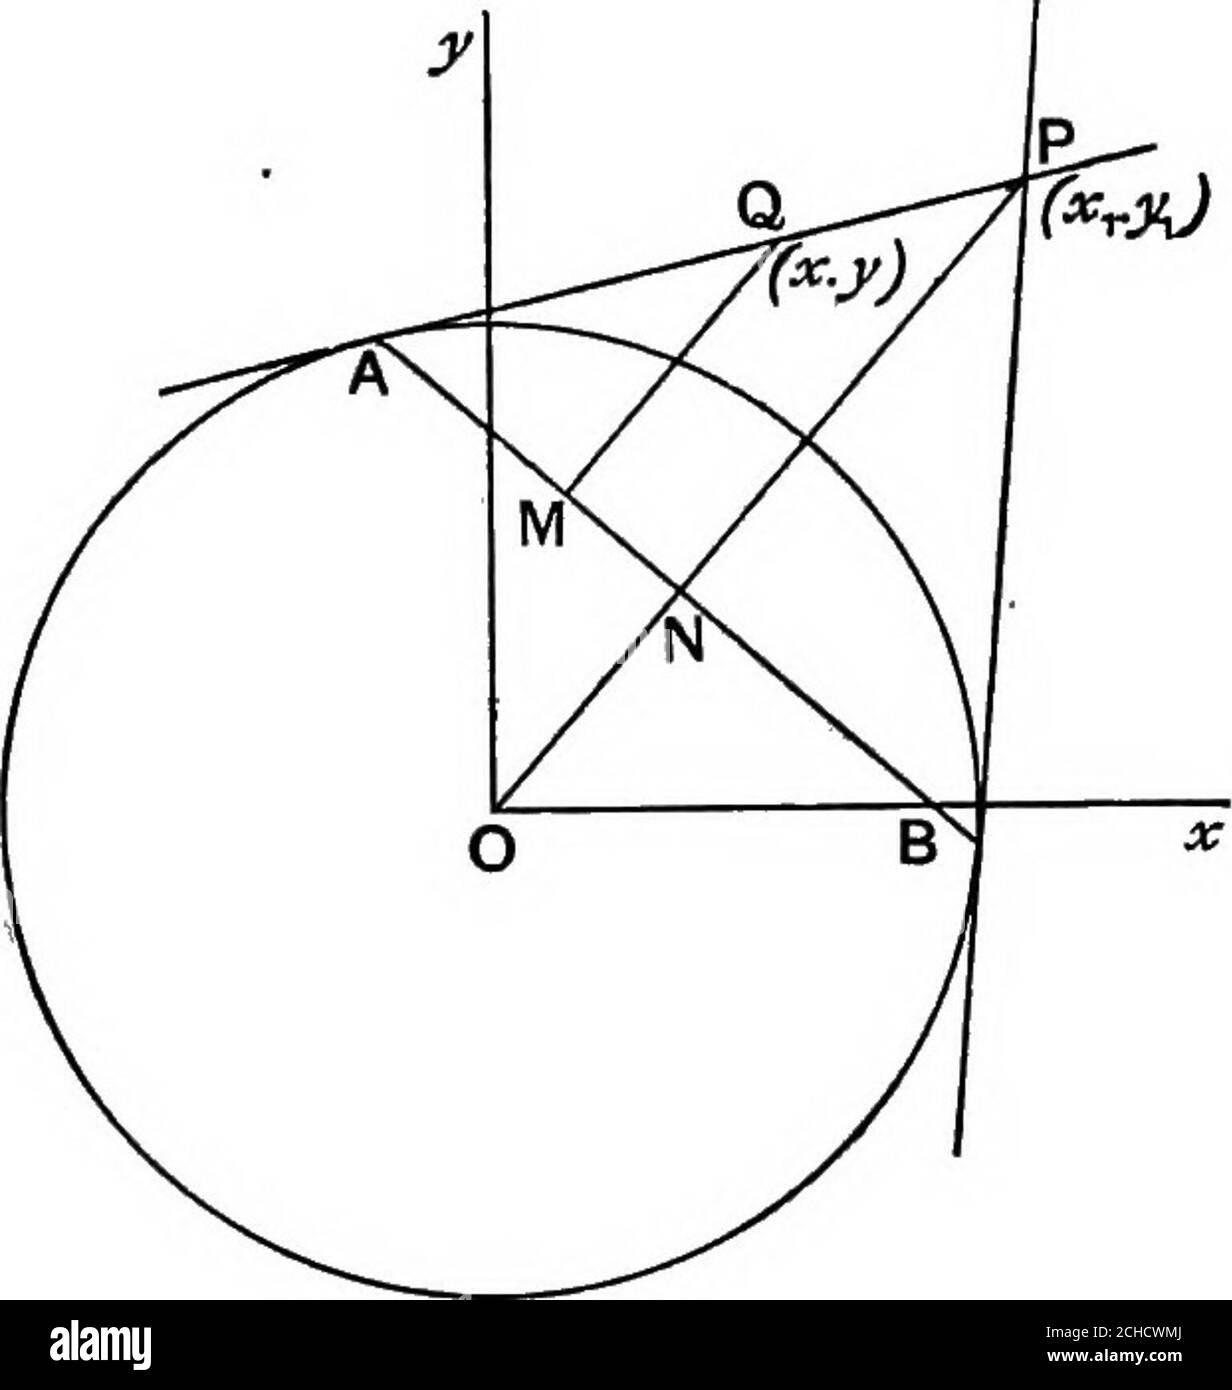 Geometría algebraica; un nuevo tratado sobre secciones cónicas analíticas .  , y- a un círculo tomando la ecuación del círculo, y escribiendo xzj en  lugar de i,yyi „ y,X + XJ „